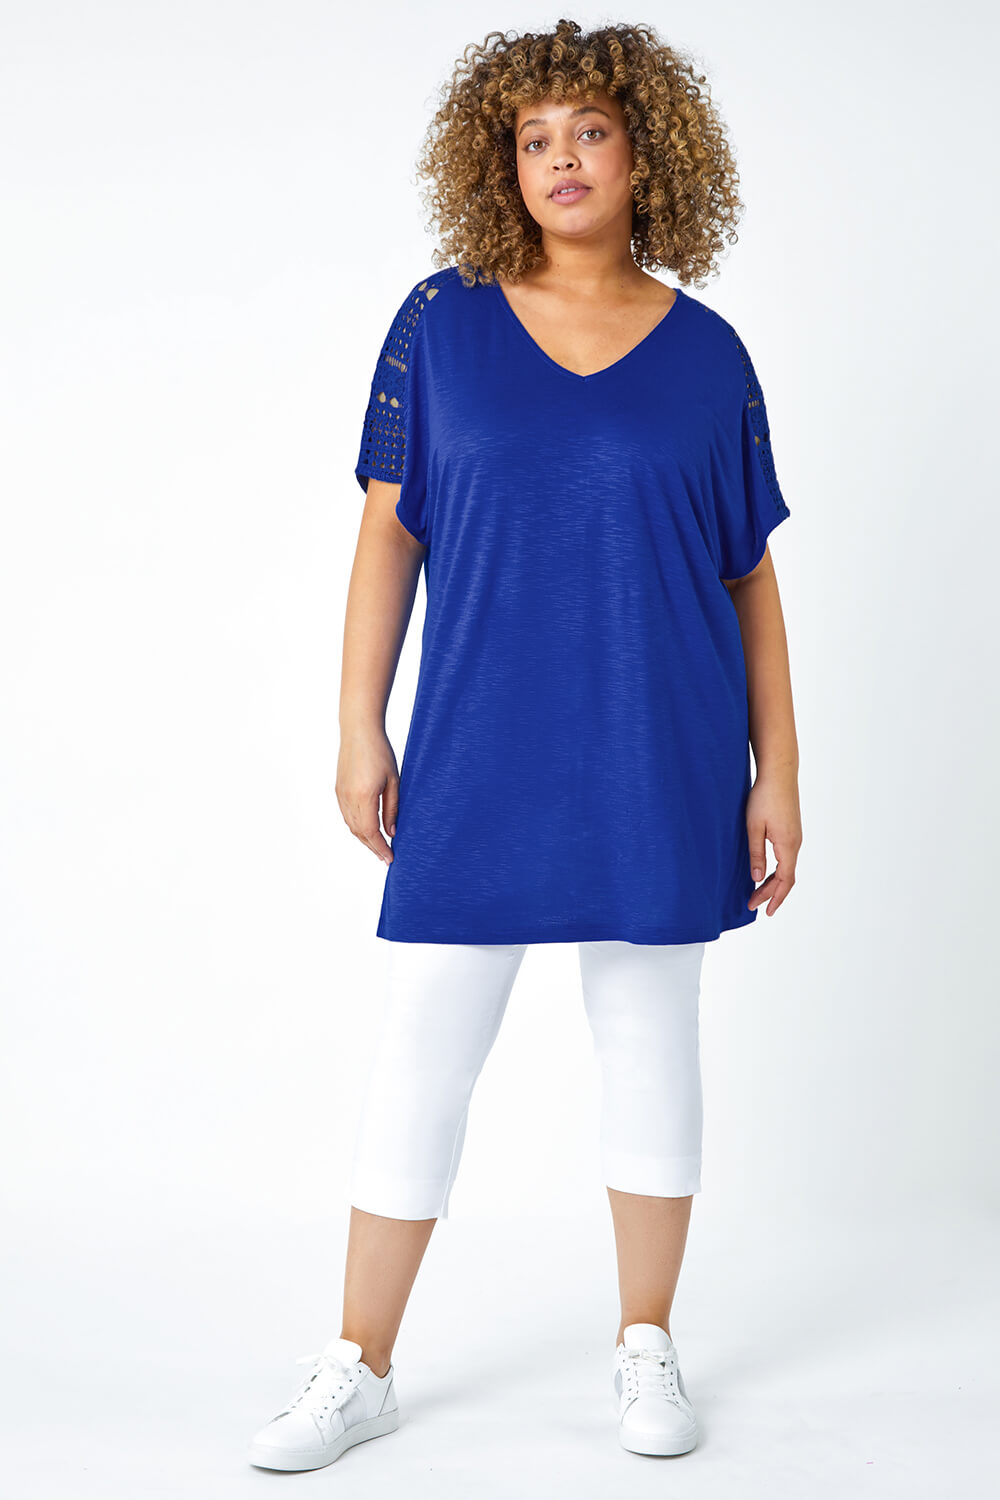 Blue Curve Lace Trim T-Shirt, Image 4 of 5